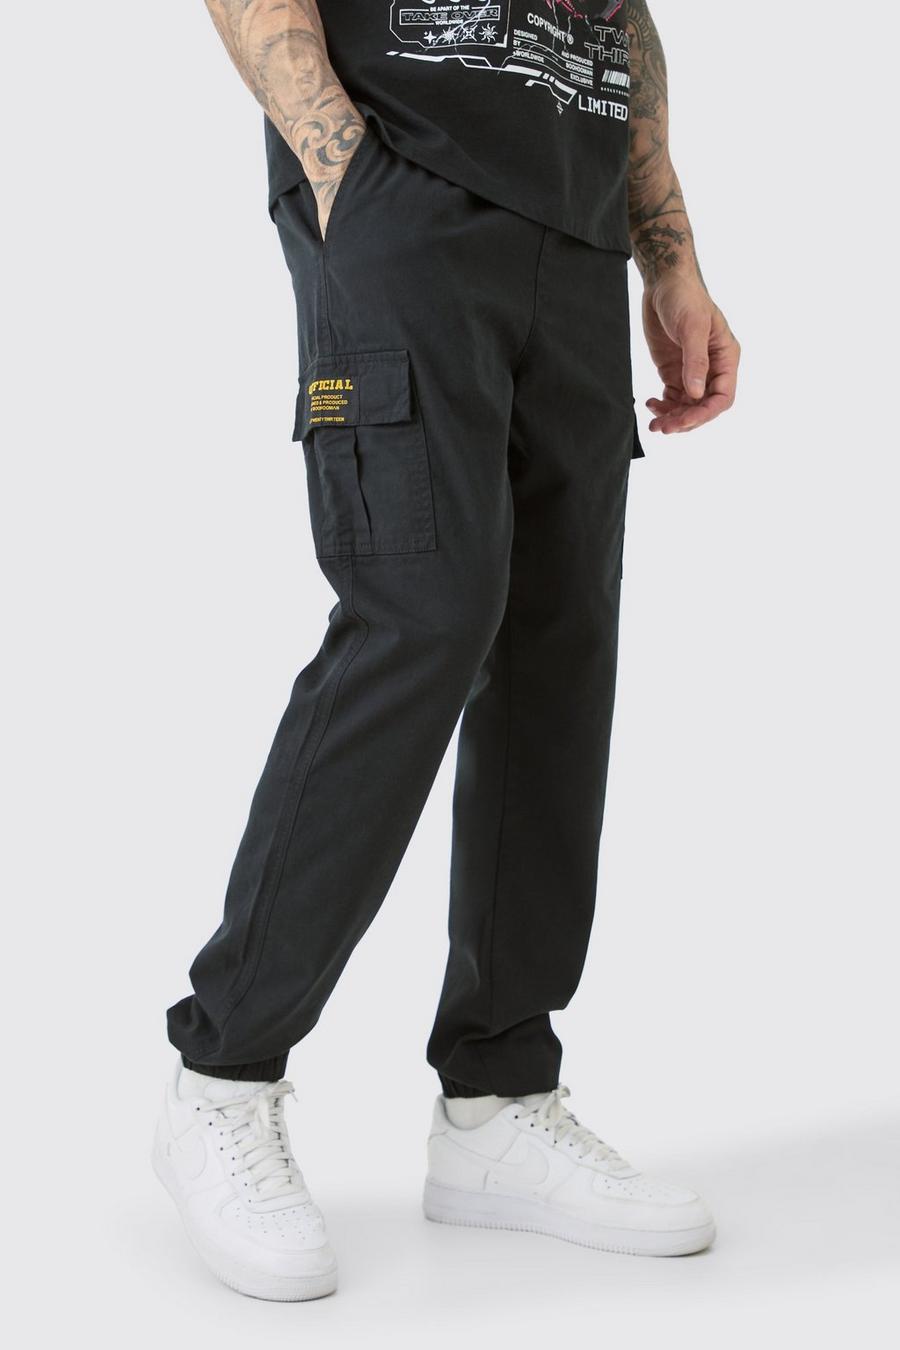 Pantaloni Cargo Tall Slim Fit in twill con vita elasticizzata e etichetta Cargo, Black